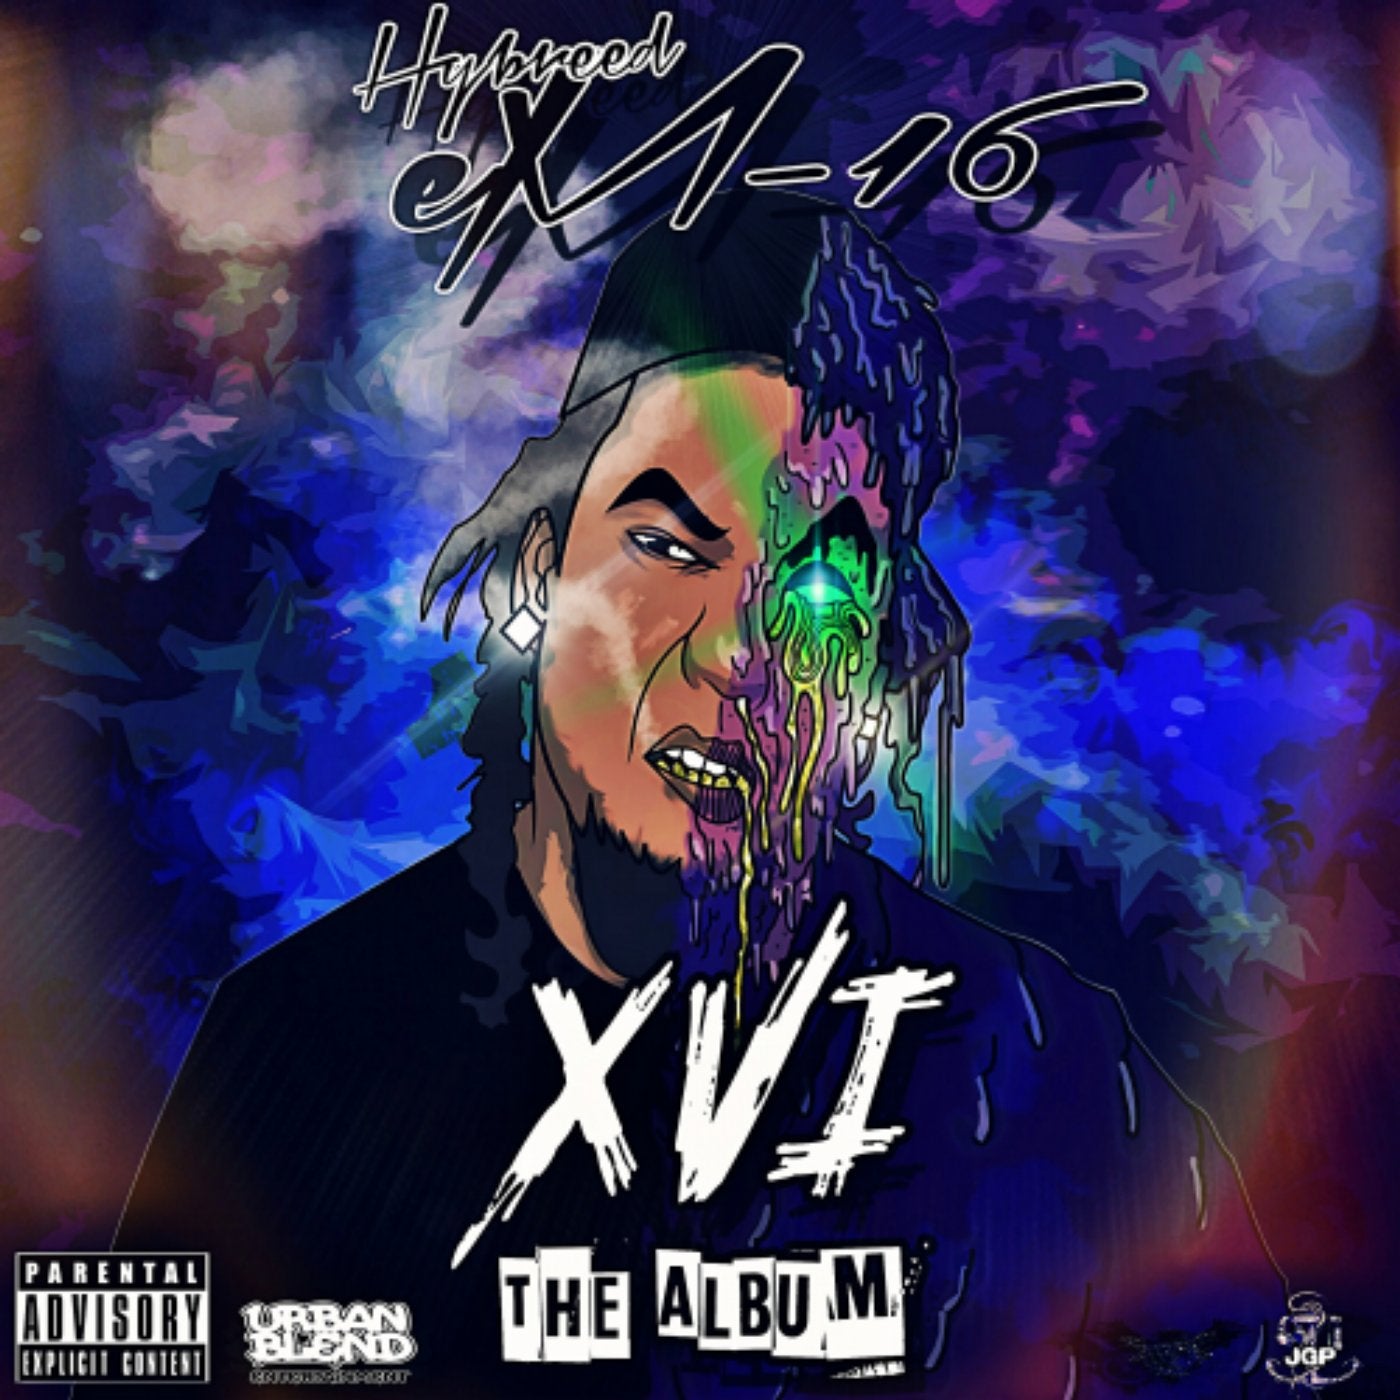 XVI: The Album